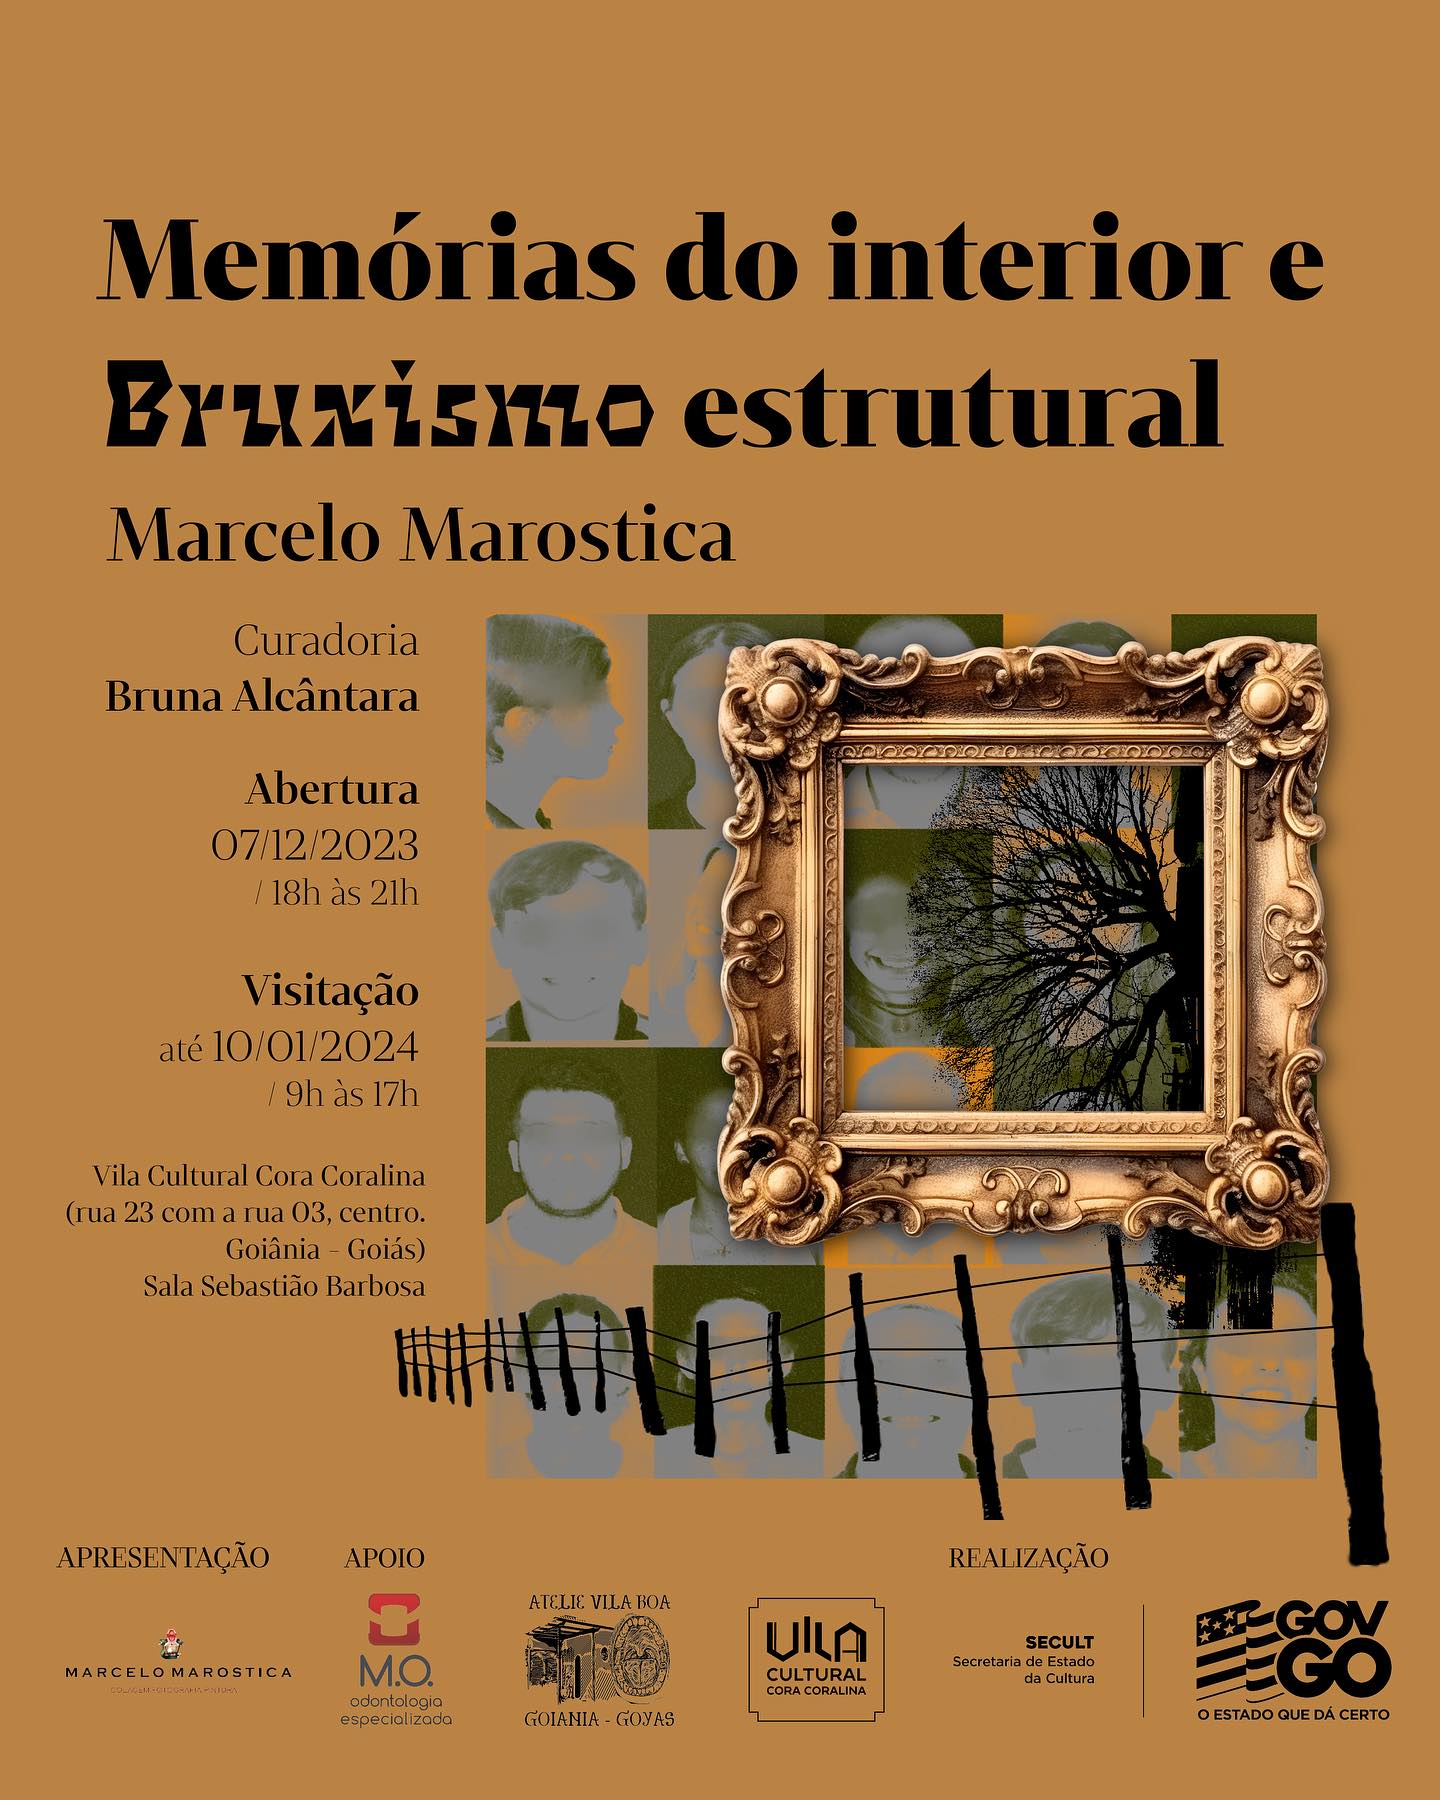 Instituto Rizzo promove Feira das Minas em edição mística em Goiânia -  @aredacao